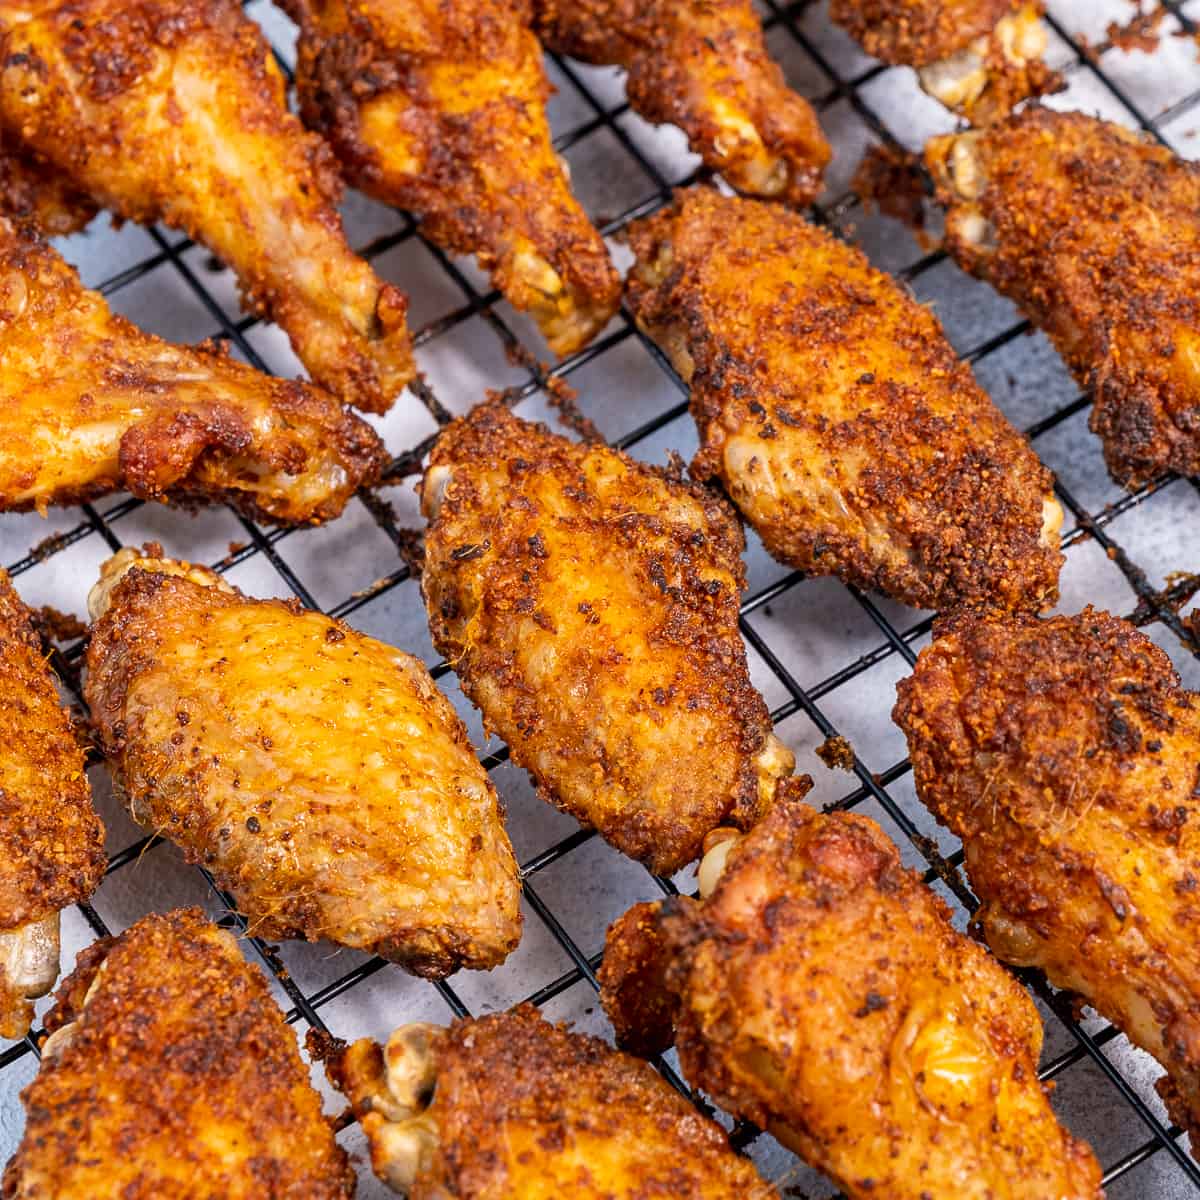 Best Baking Powder Fried Chicken Recipe - How to Make Fried Chicken